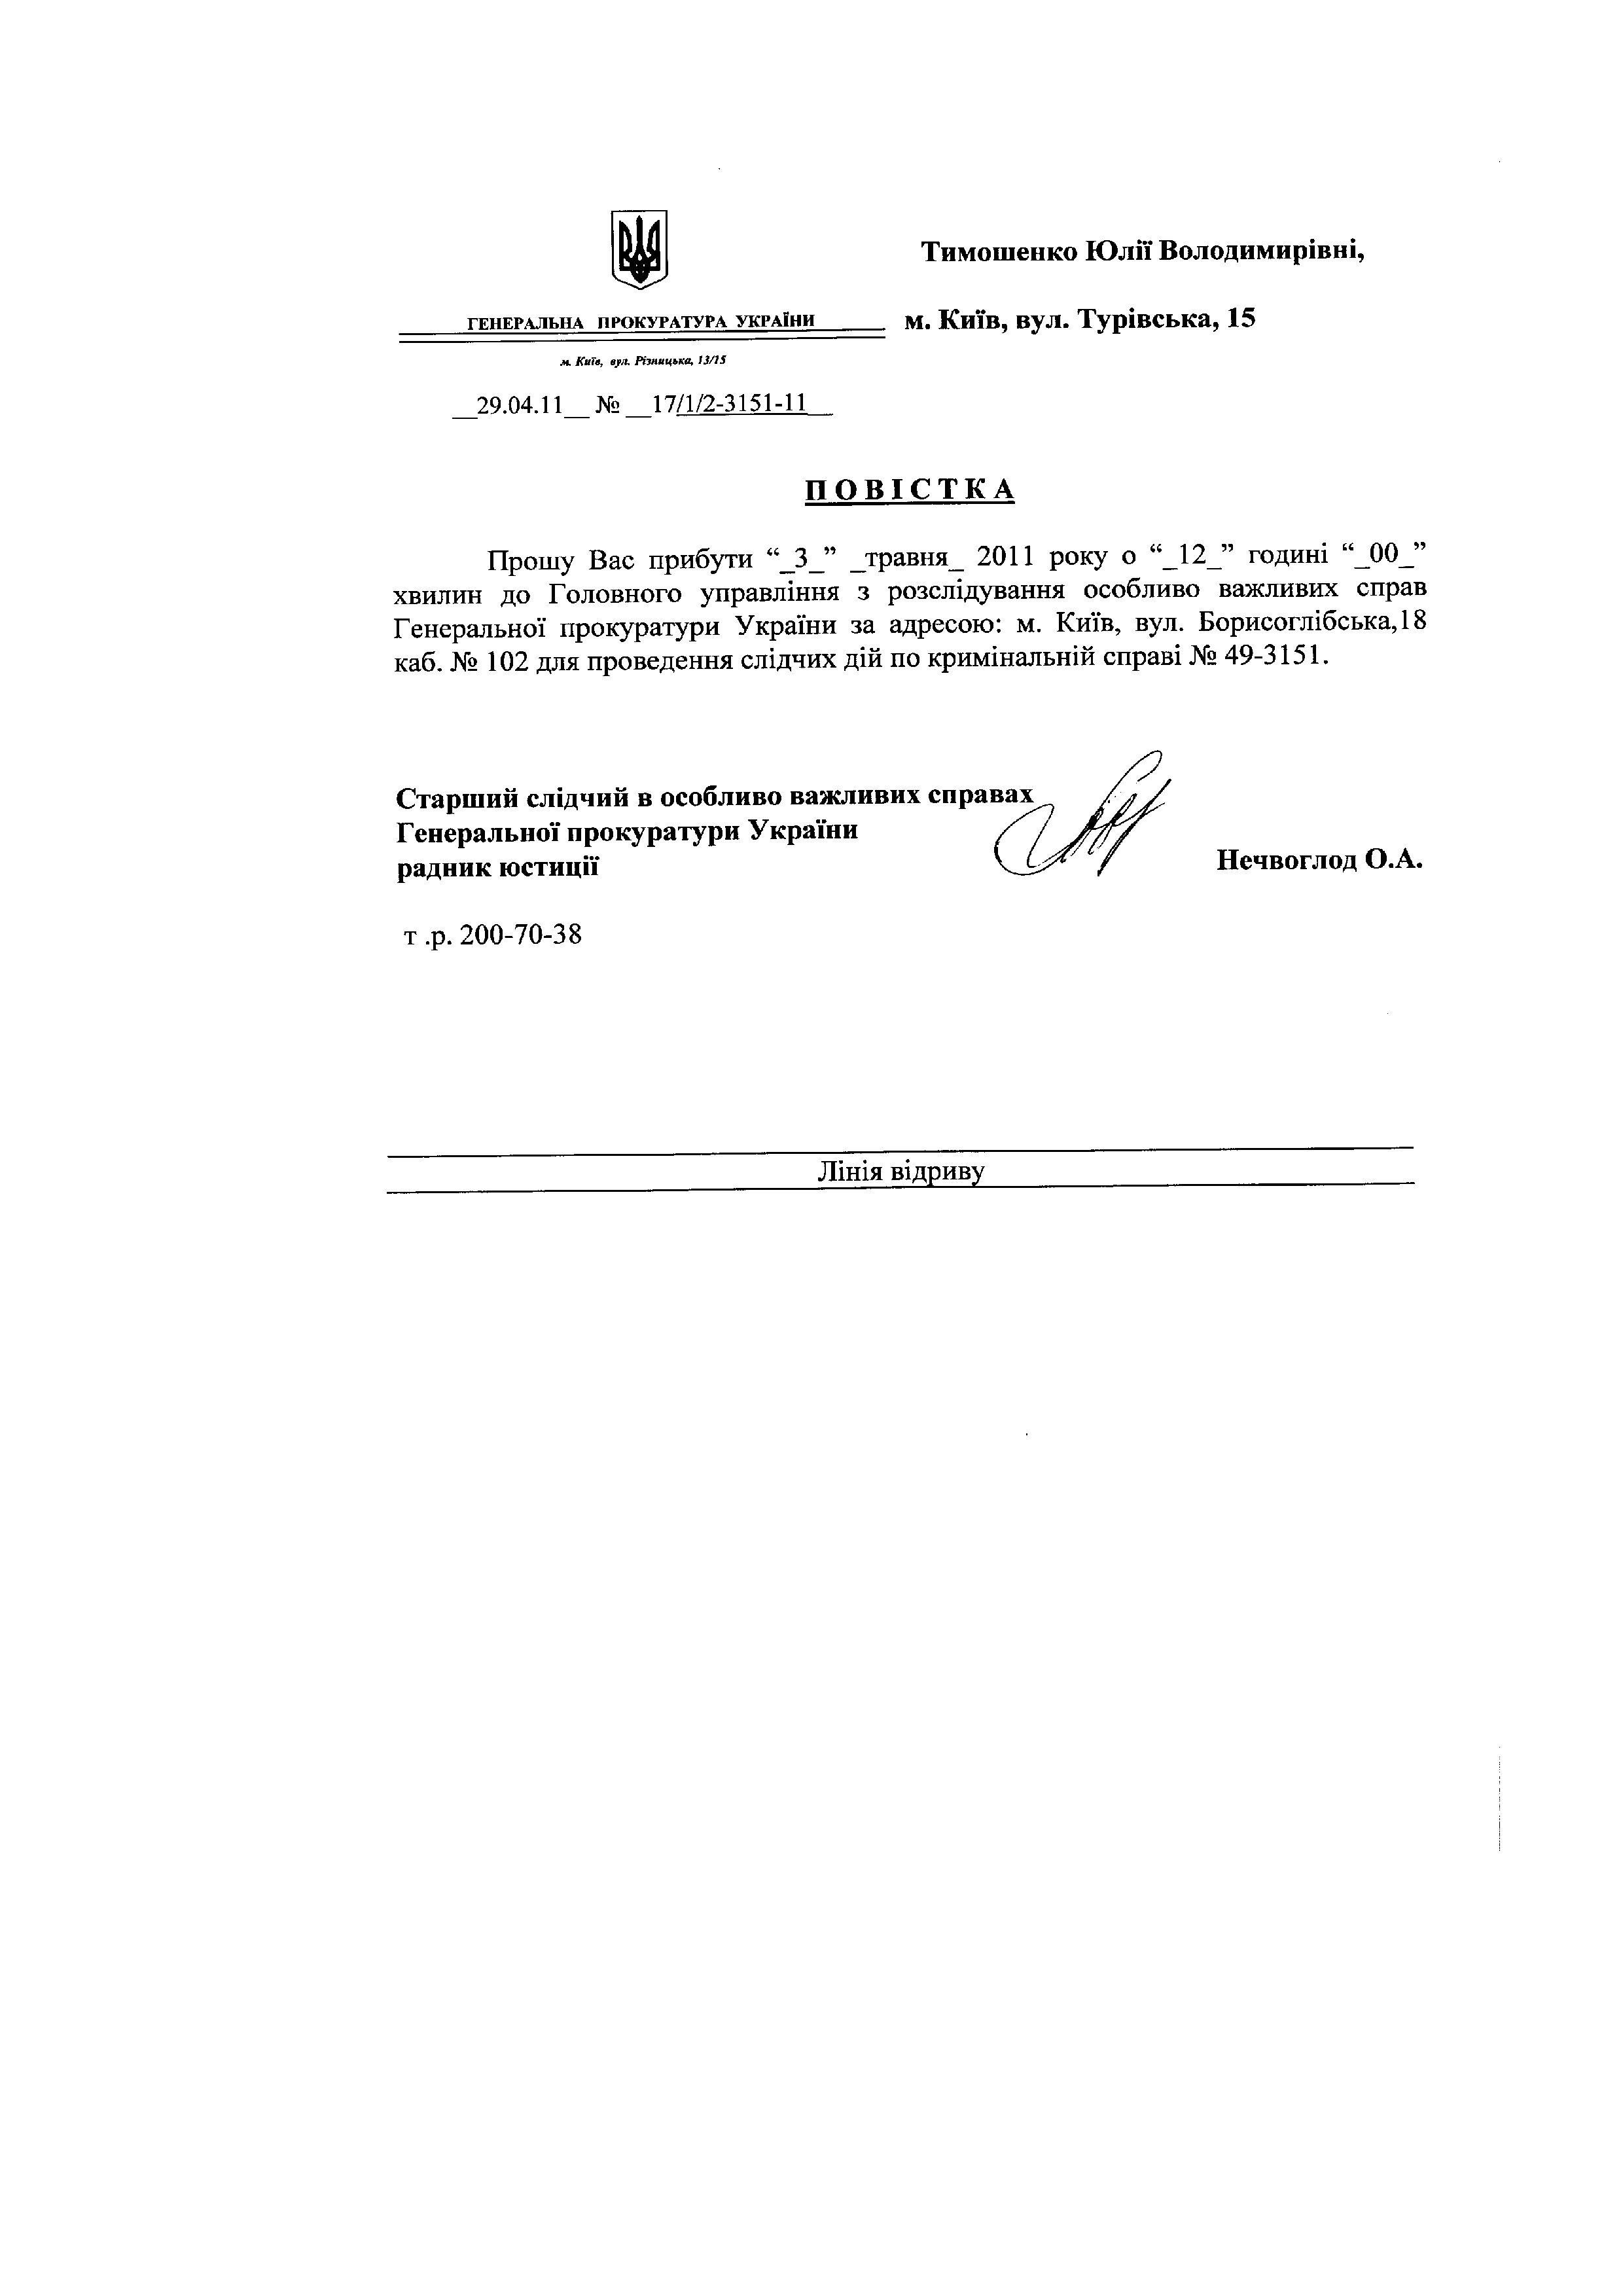 Повістки до ГПУ Тимошенко Ю.В._page013.jpg